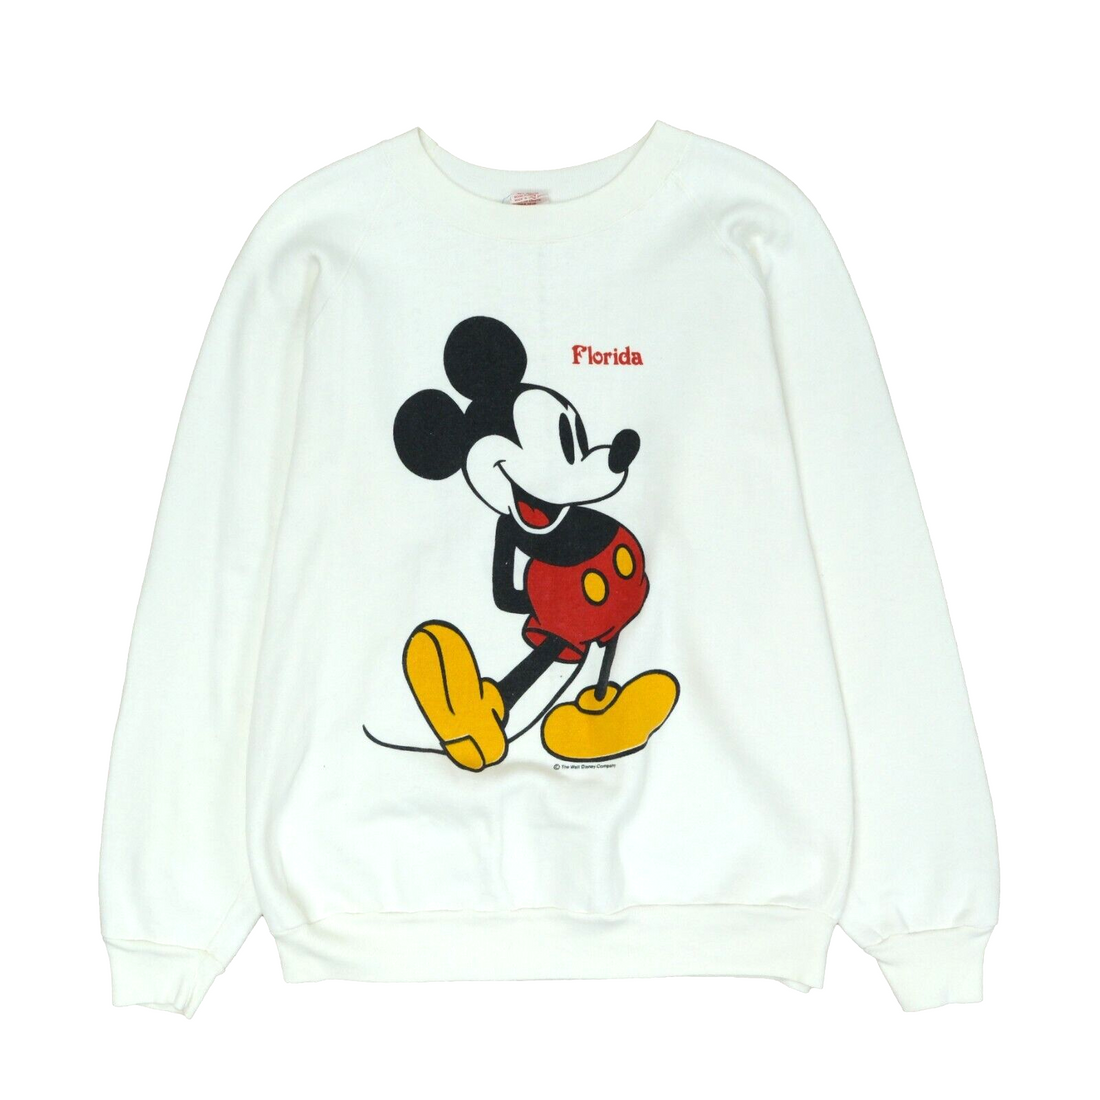 Vintage Mickey Mouse Florida Disney Sweatshirt Crewneck Size XL White 90s